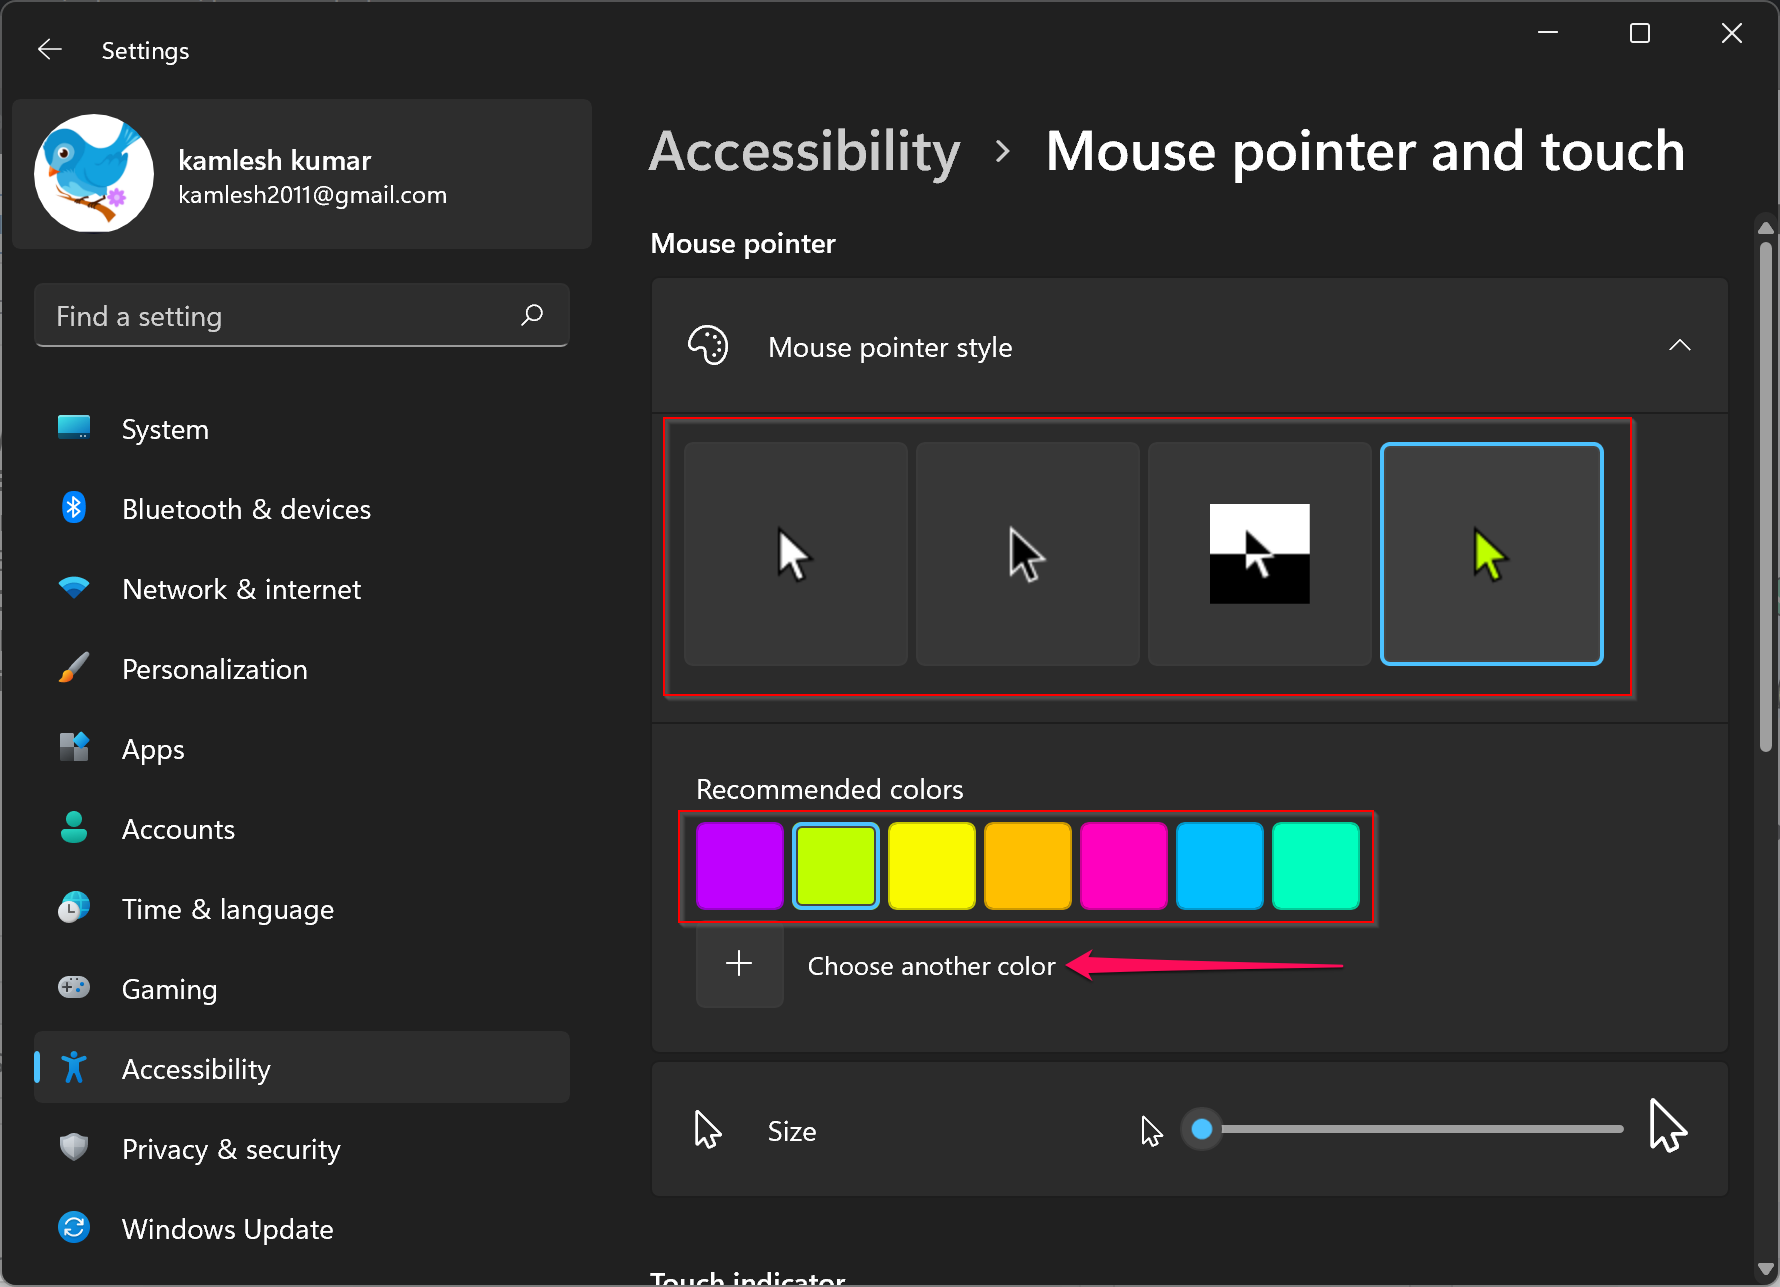 control panel mouse options logitech setpoint